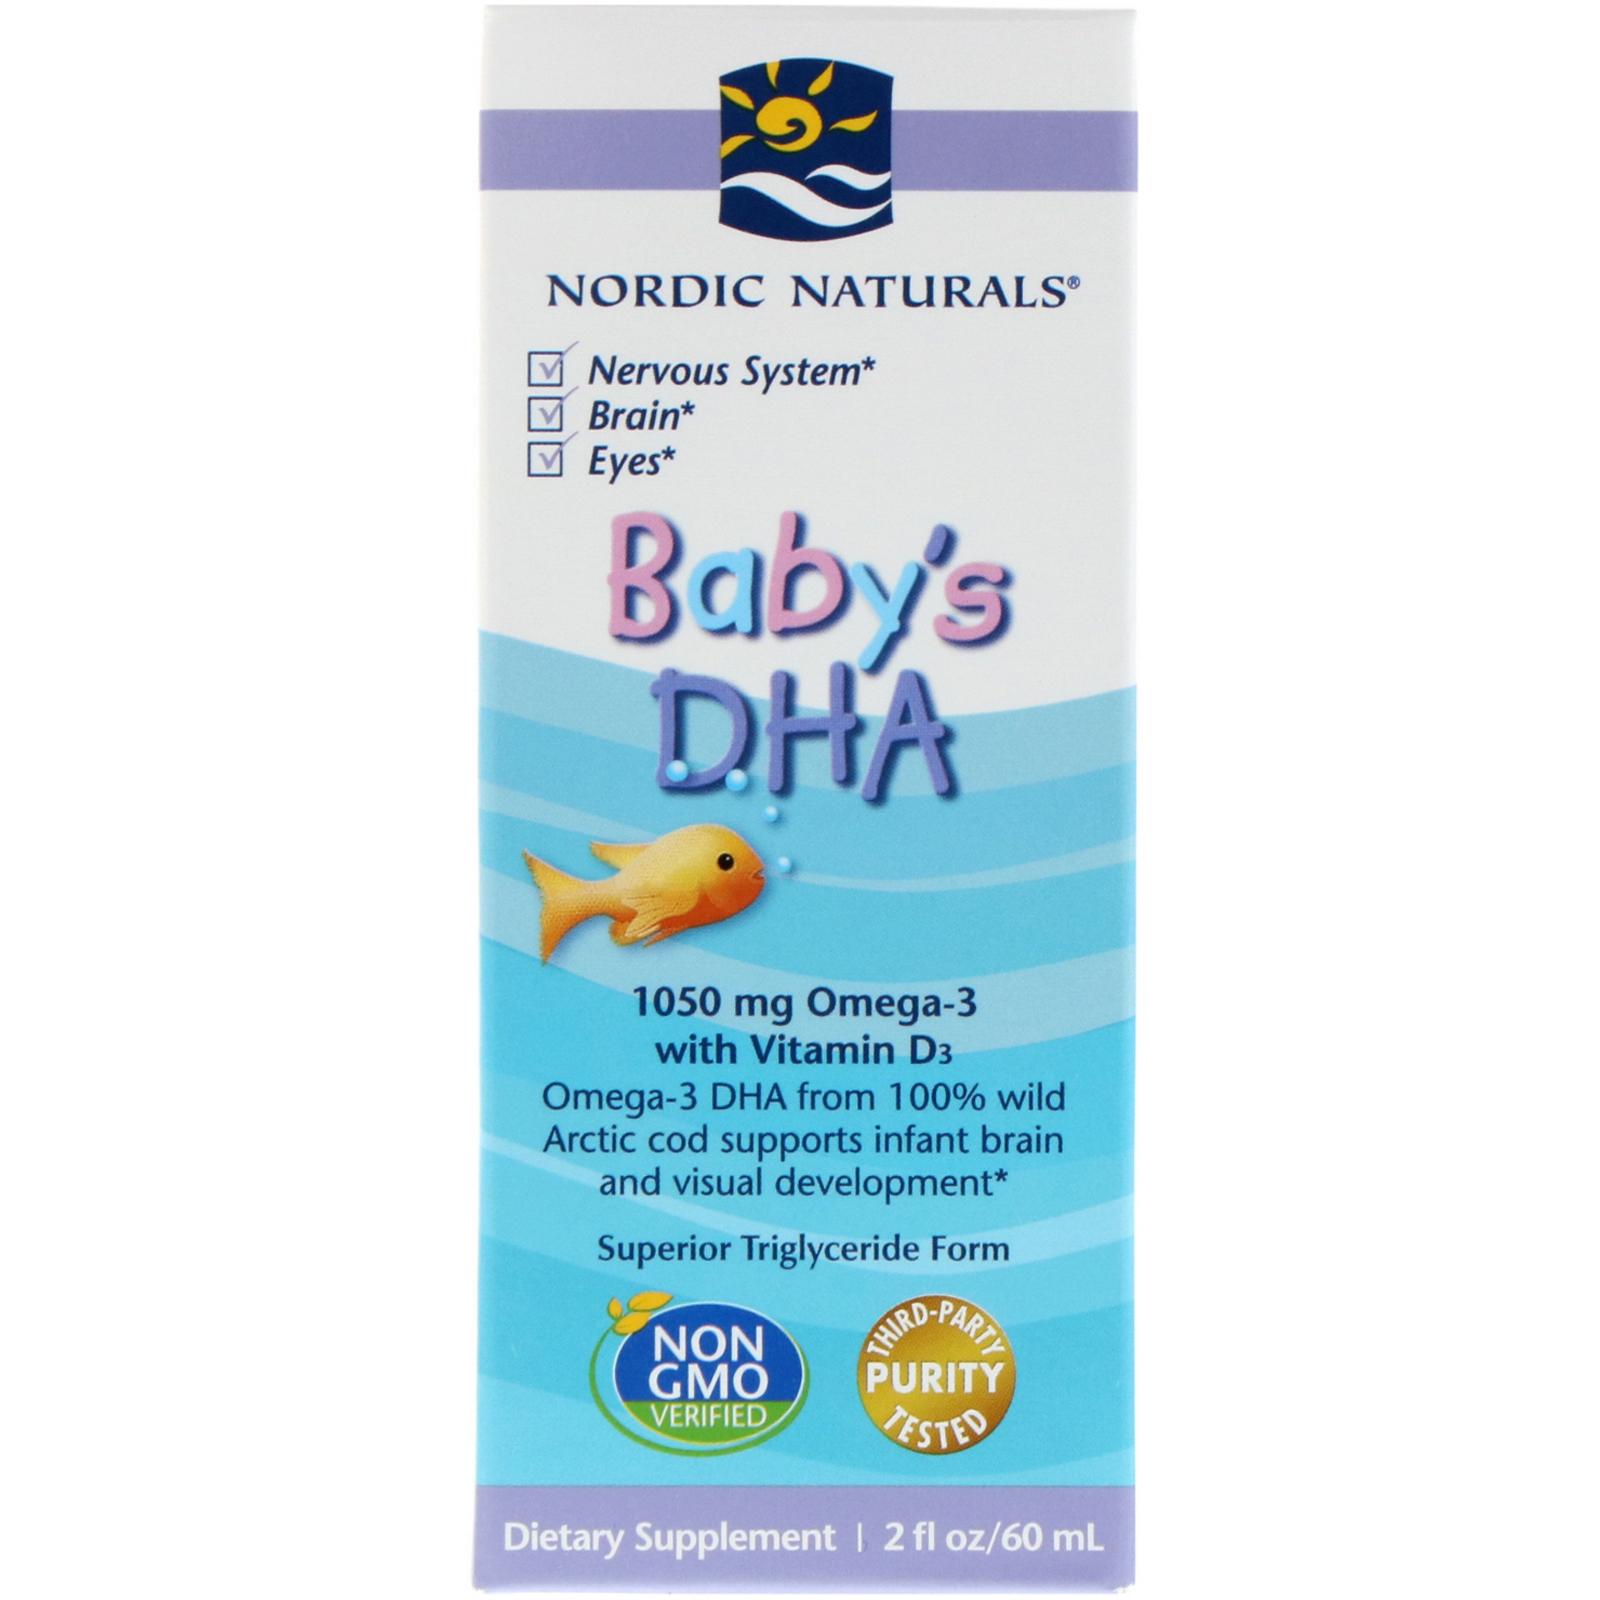 ซื้อที่ไหน Nordic Naturals, Baby's DHA, with Vitamin D3, 2 fl oz (60 ml)